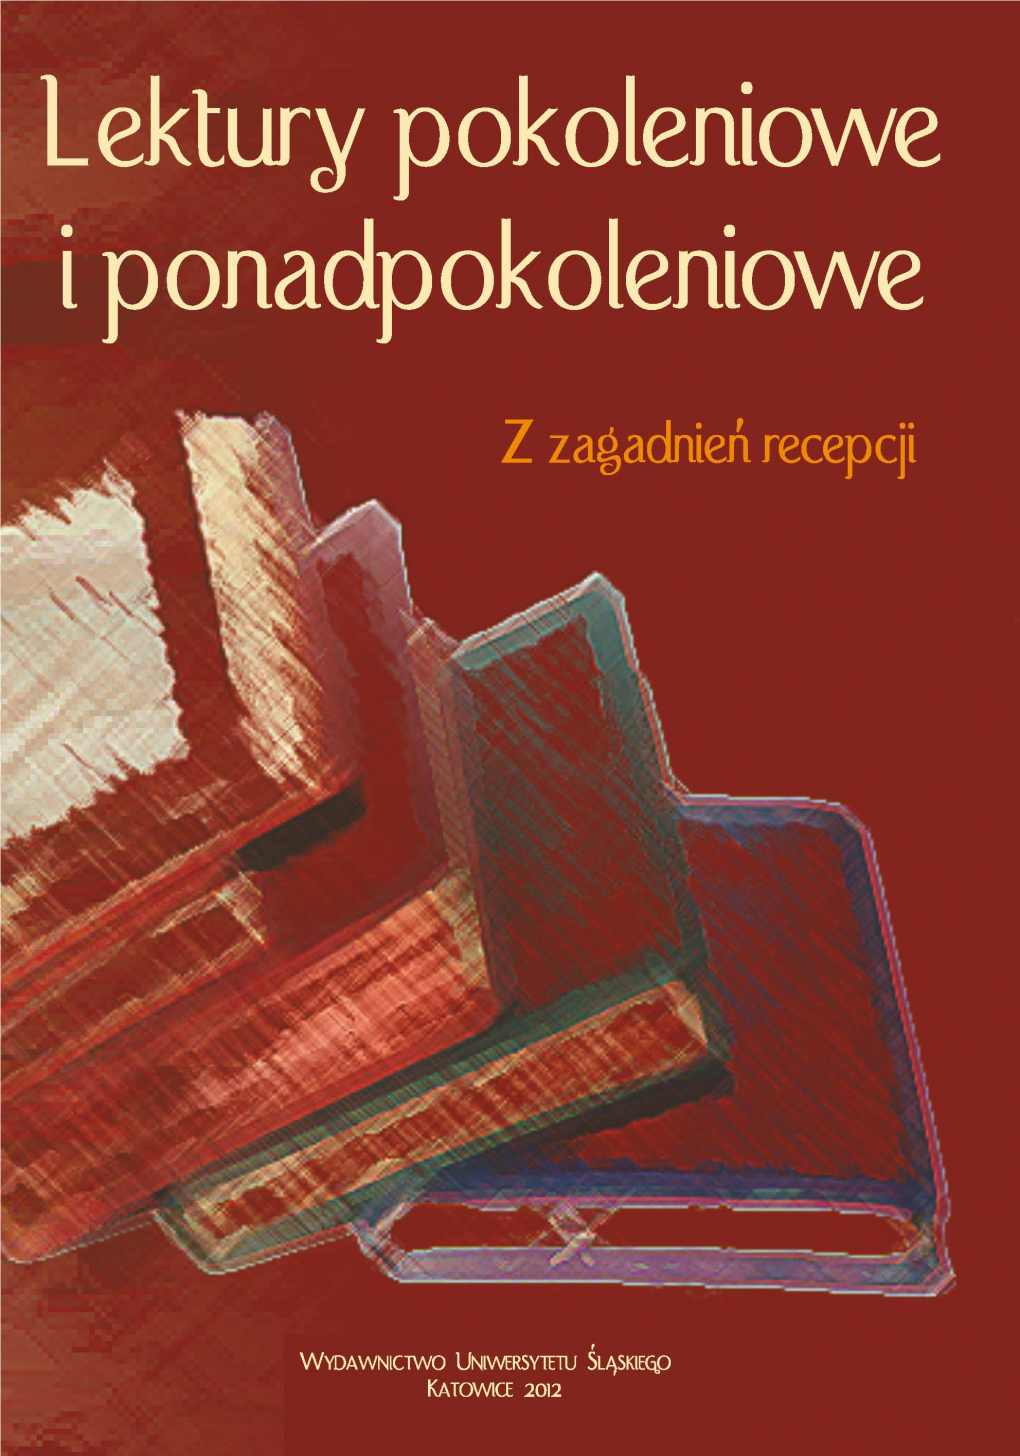 Kłopoty Z Talentem, Czyli Opinie O Książkach Na Łamach „Dziennika Polskiego” W Latach 1949—1956 / 31